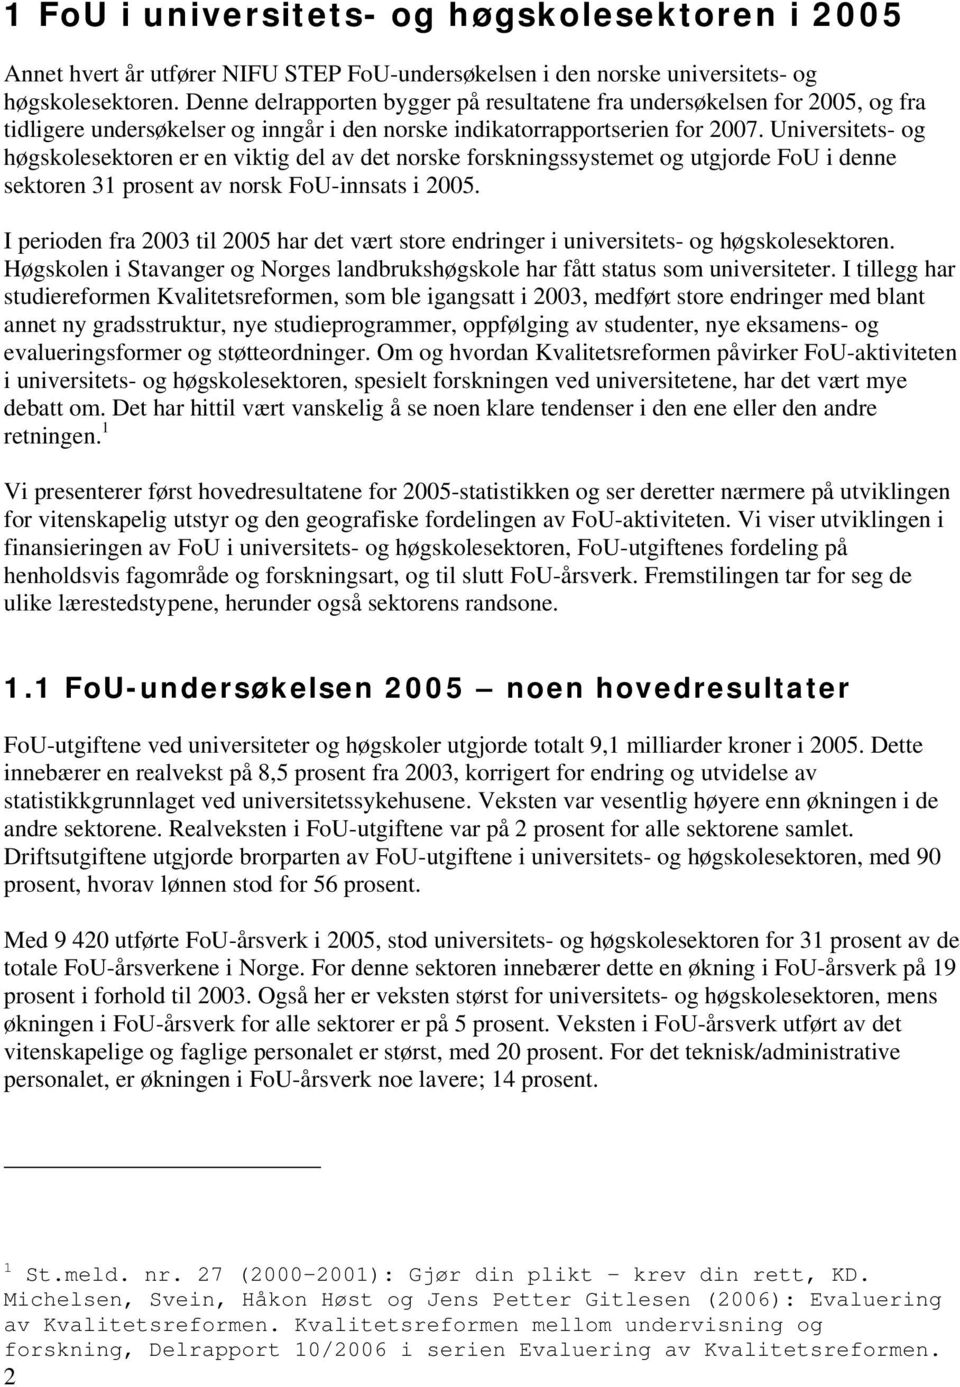 Universitets- og høgskolesektoren er en viktig del av det norske forskningssystemet og utgjorde FoU i denne sektoren 31 prosent av norsk FoU-innsats i 2005.